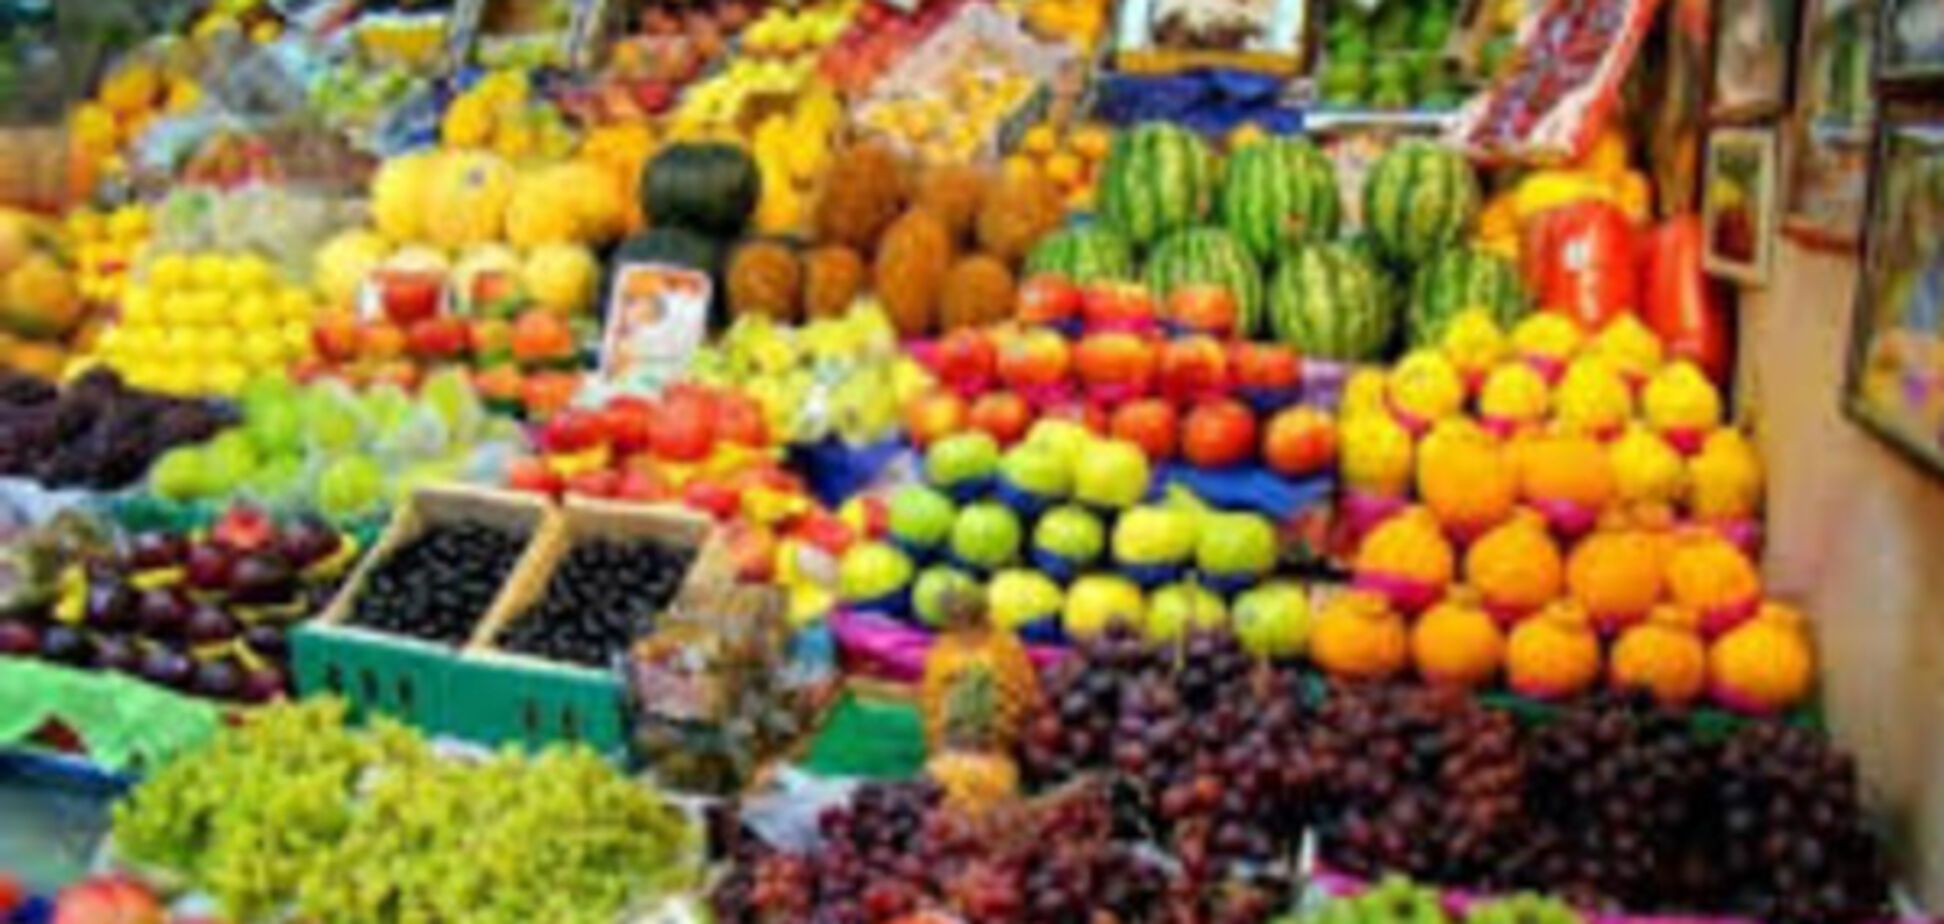 импортеры овощей и фруктов